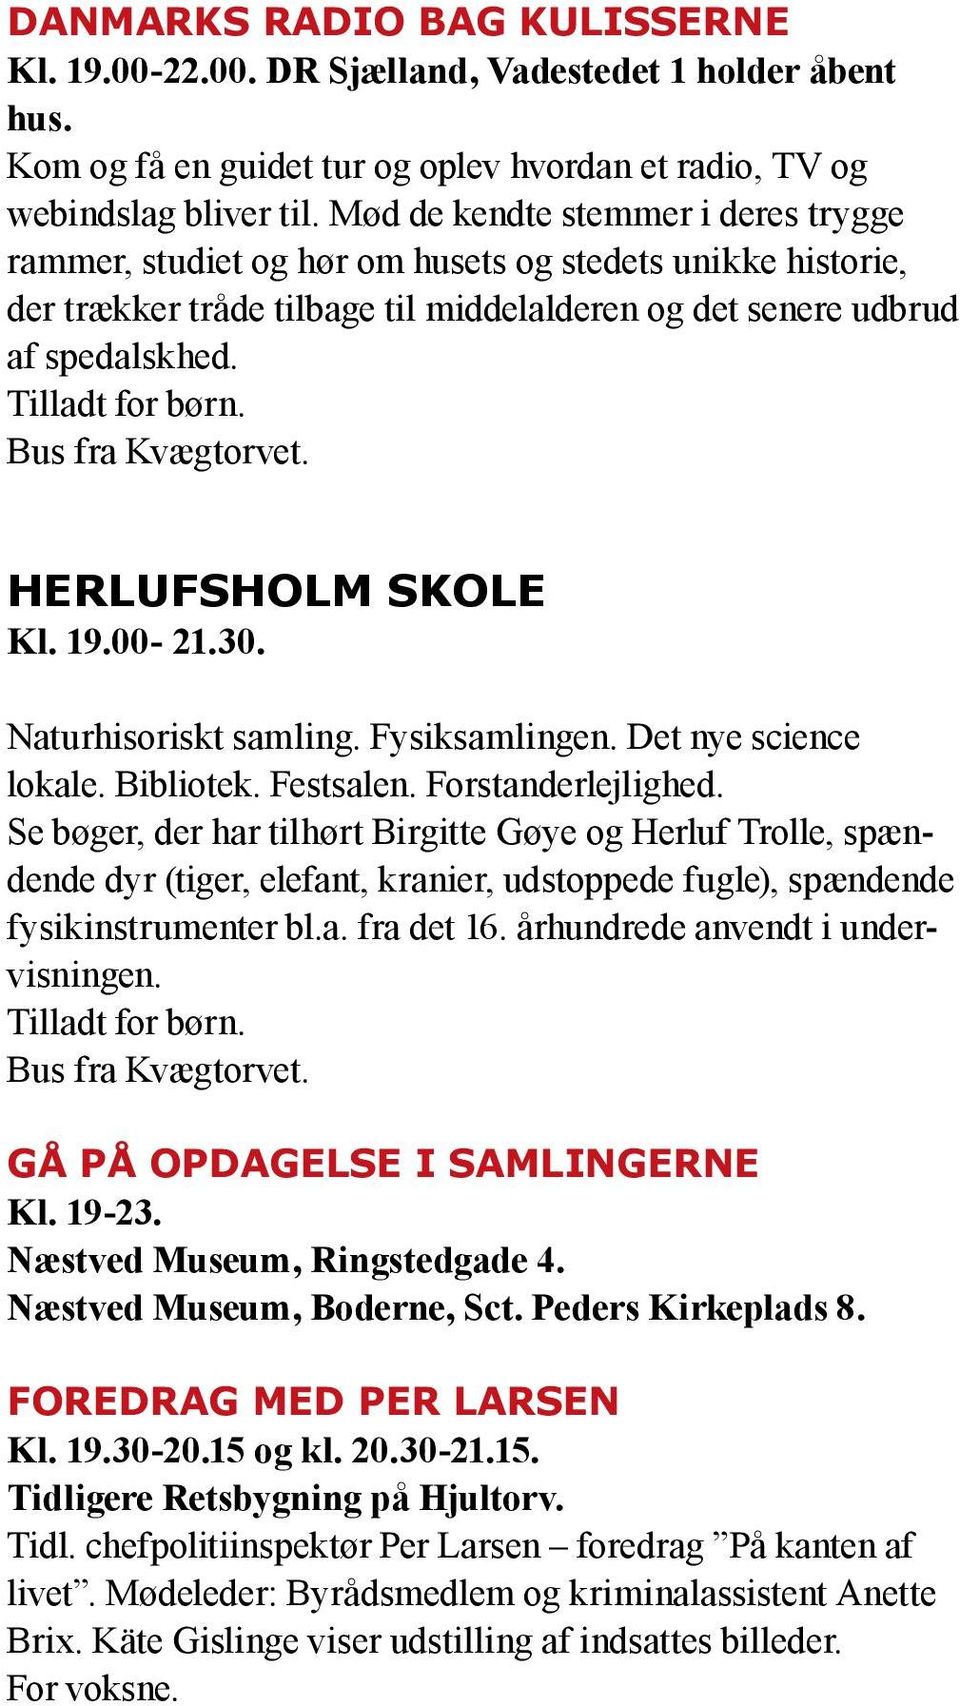 Herlufsholm Skole Kl. 19.00-21.30. Naturhisoriskt samling. Fysiksamlingen. Det nye science lokale. Bibliotek. Festsalen. Forstanderlejlighed.